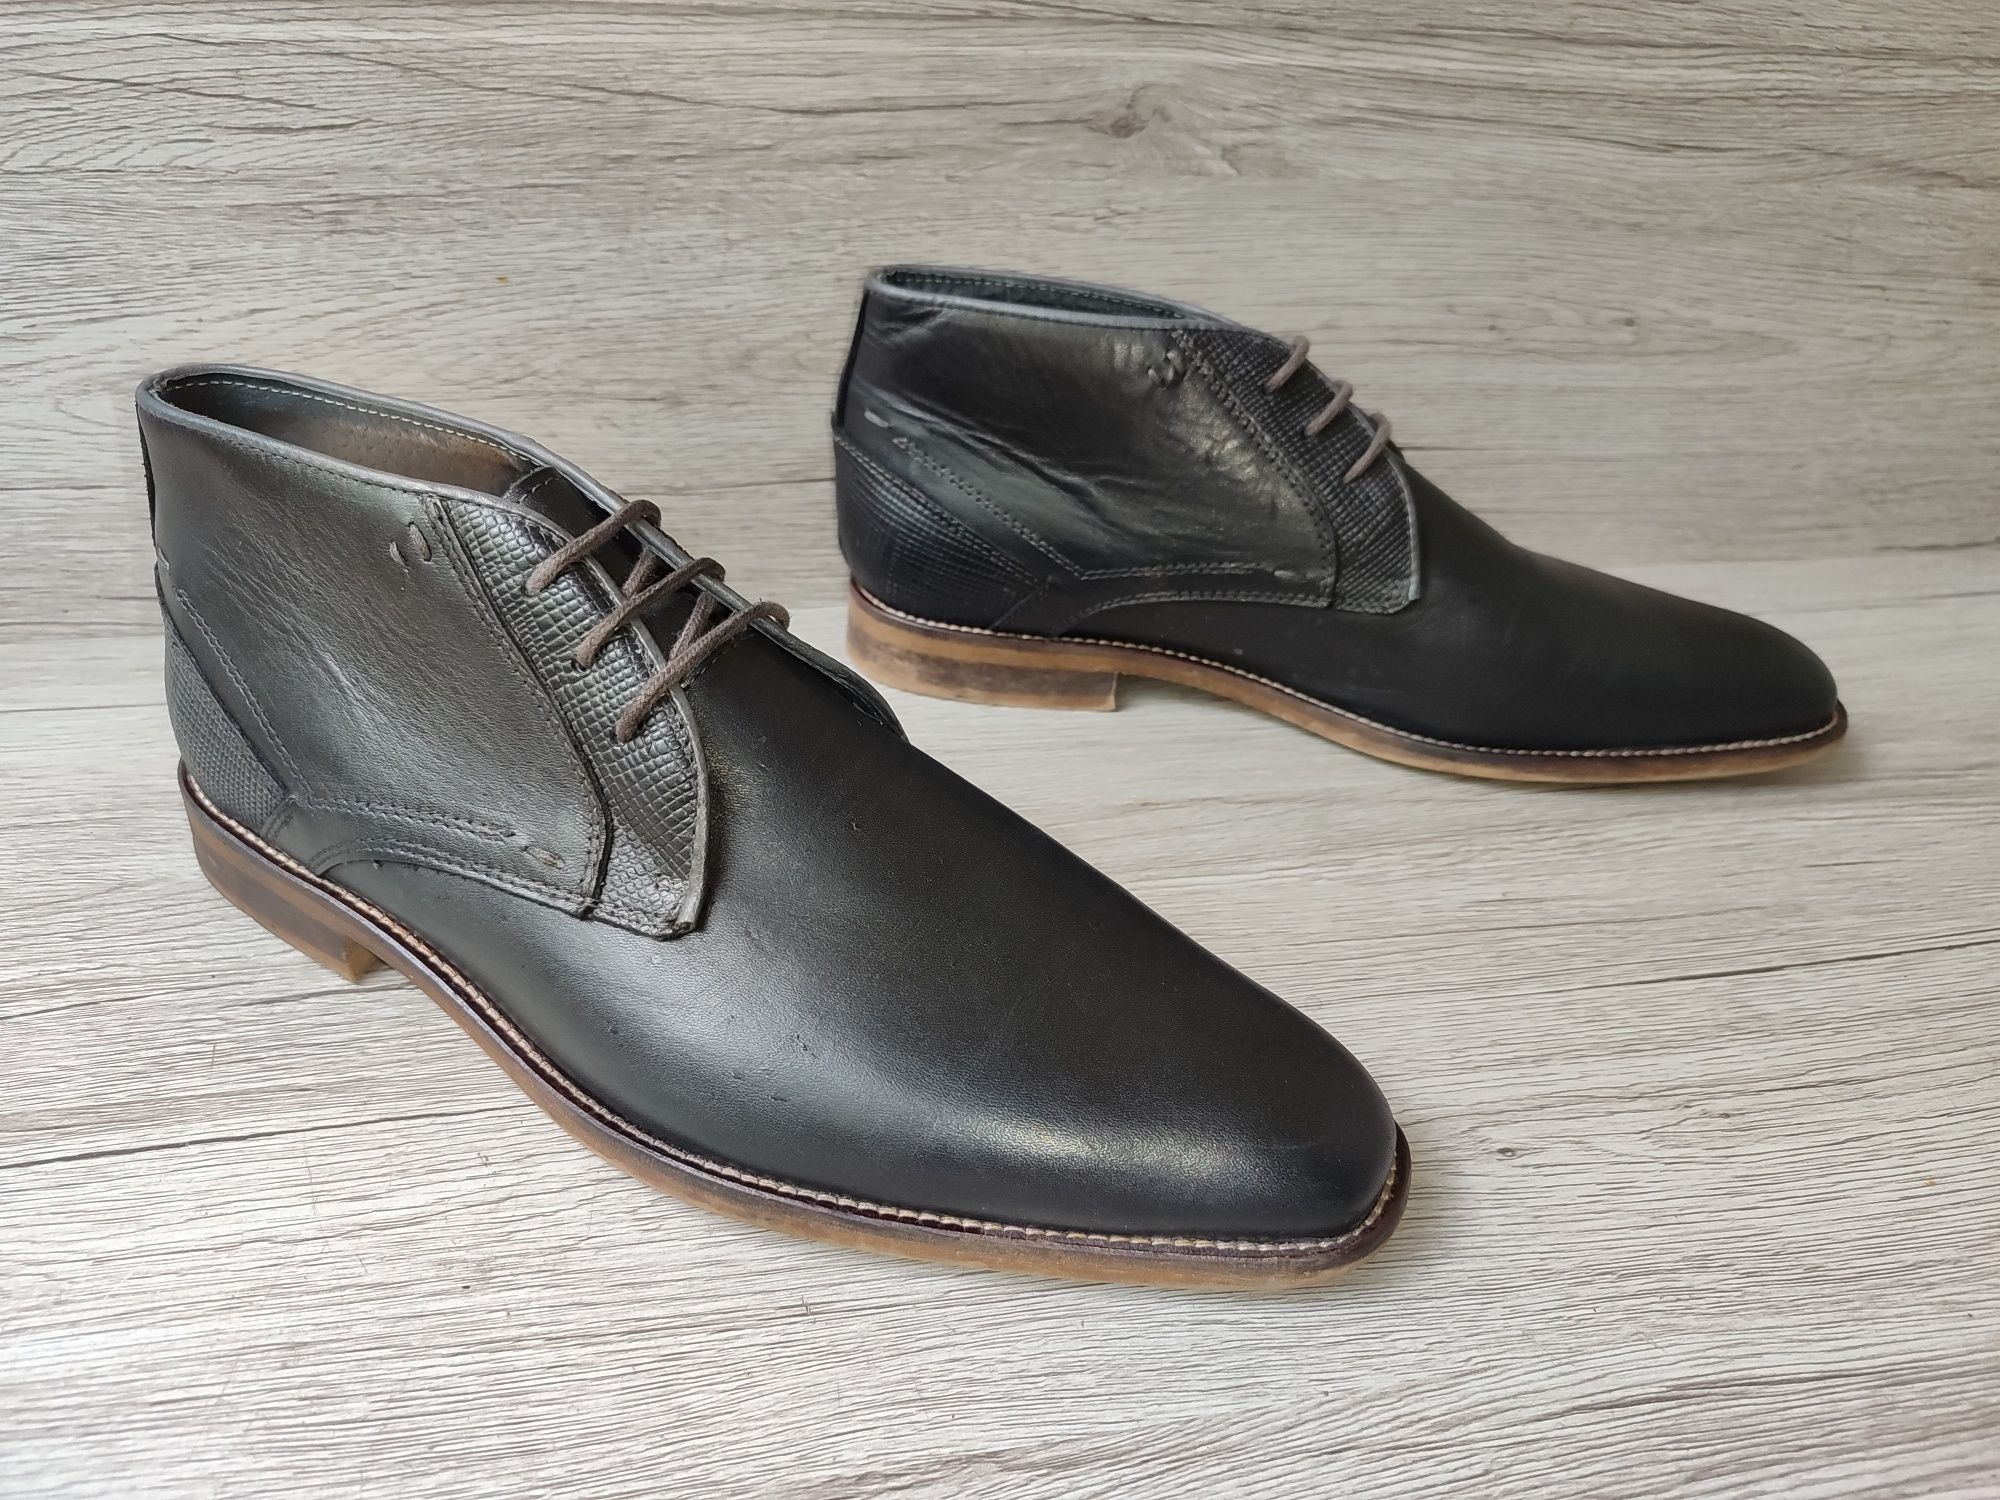 Capristano 43р ботинки сапоги Челси туфли мужские кожаные Италия